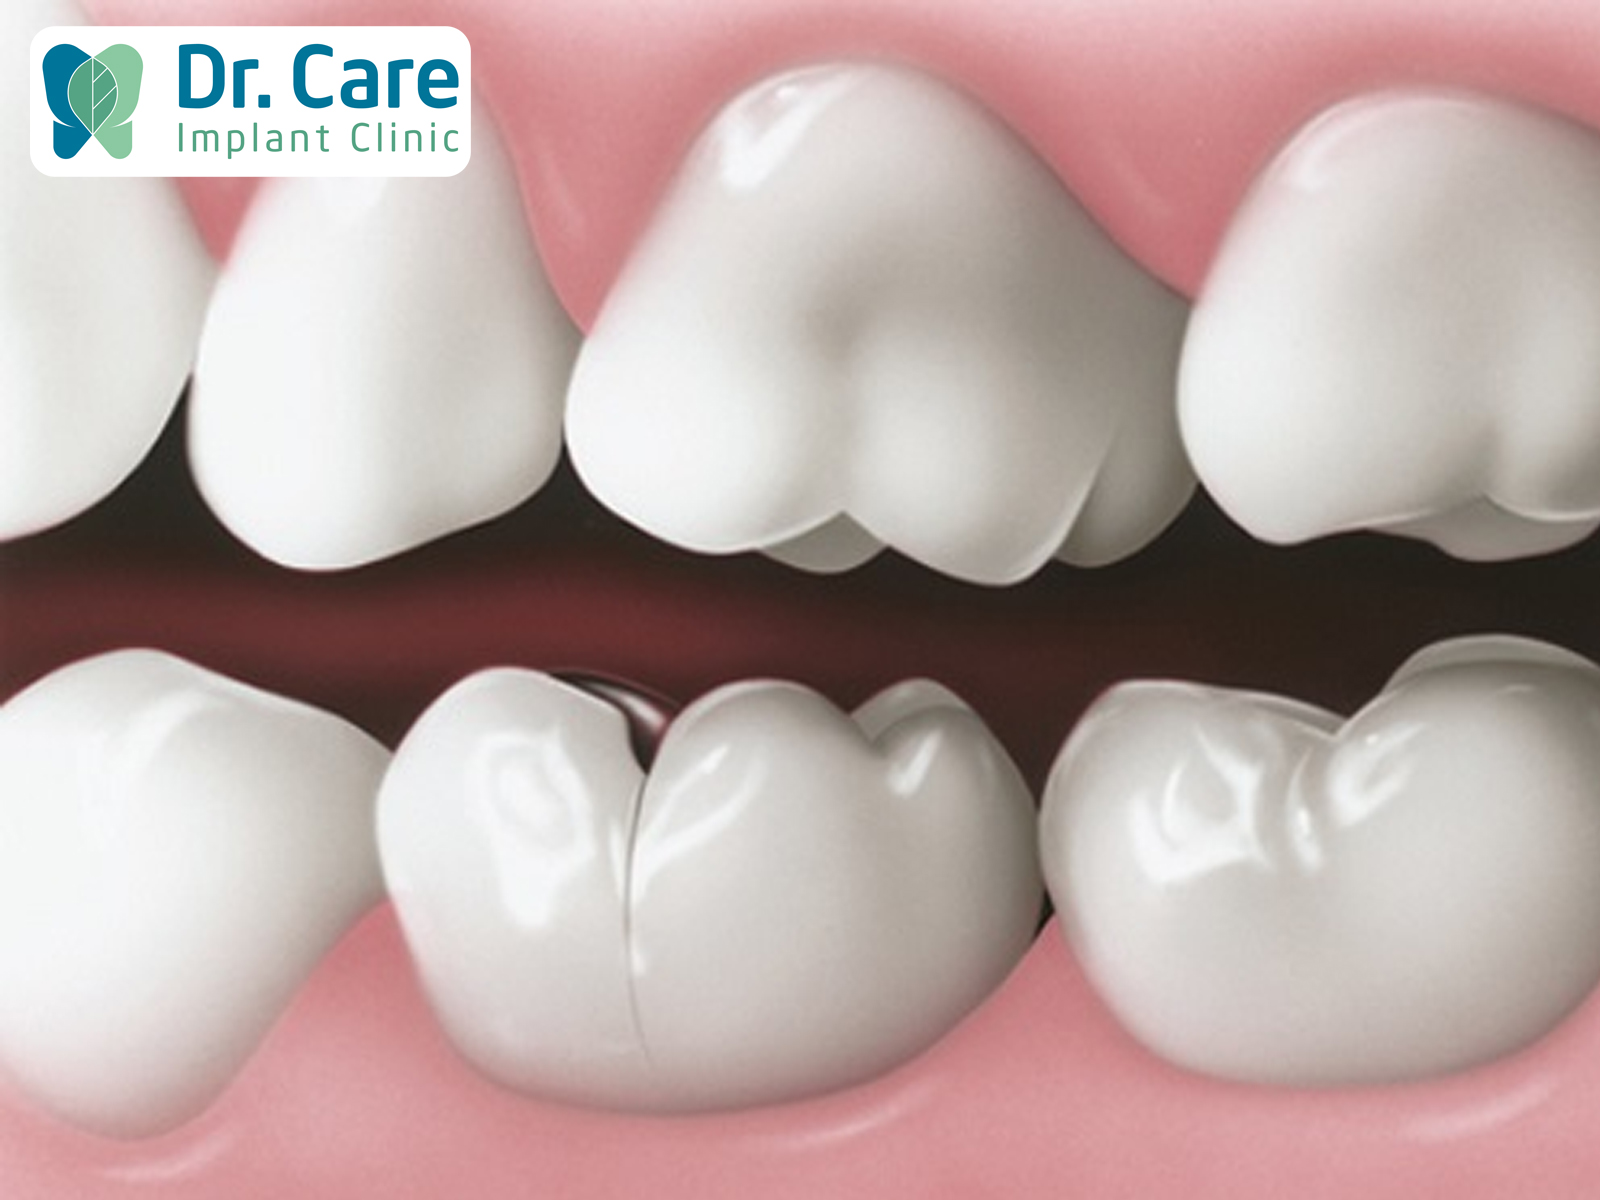 Sau khi răng được mài để bọc sứ, tình trạng bề mặt răng bị rạn nứt là một tình trạng cần thảo luận ngay với Bác sĩ điều trị